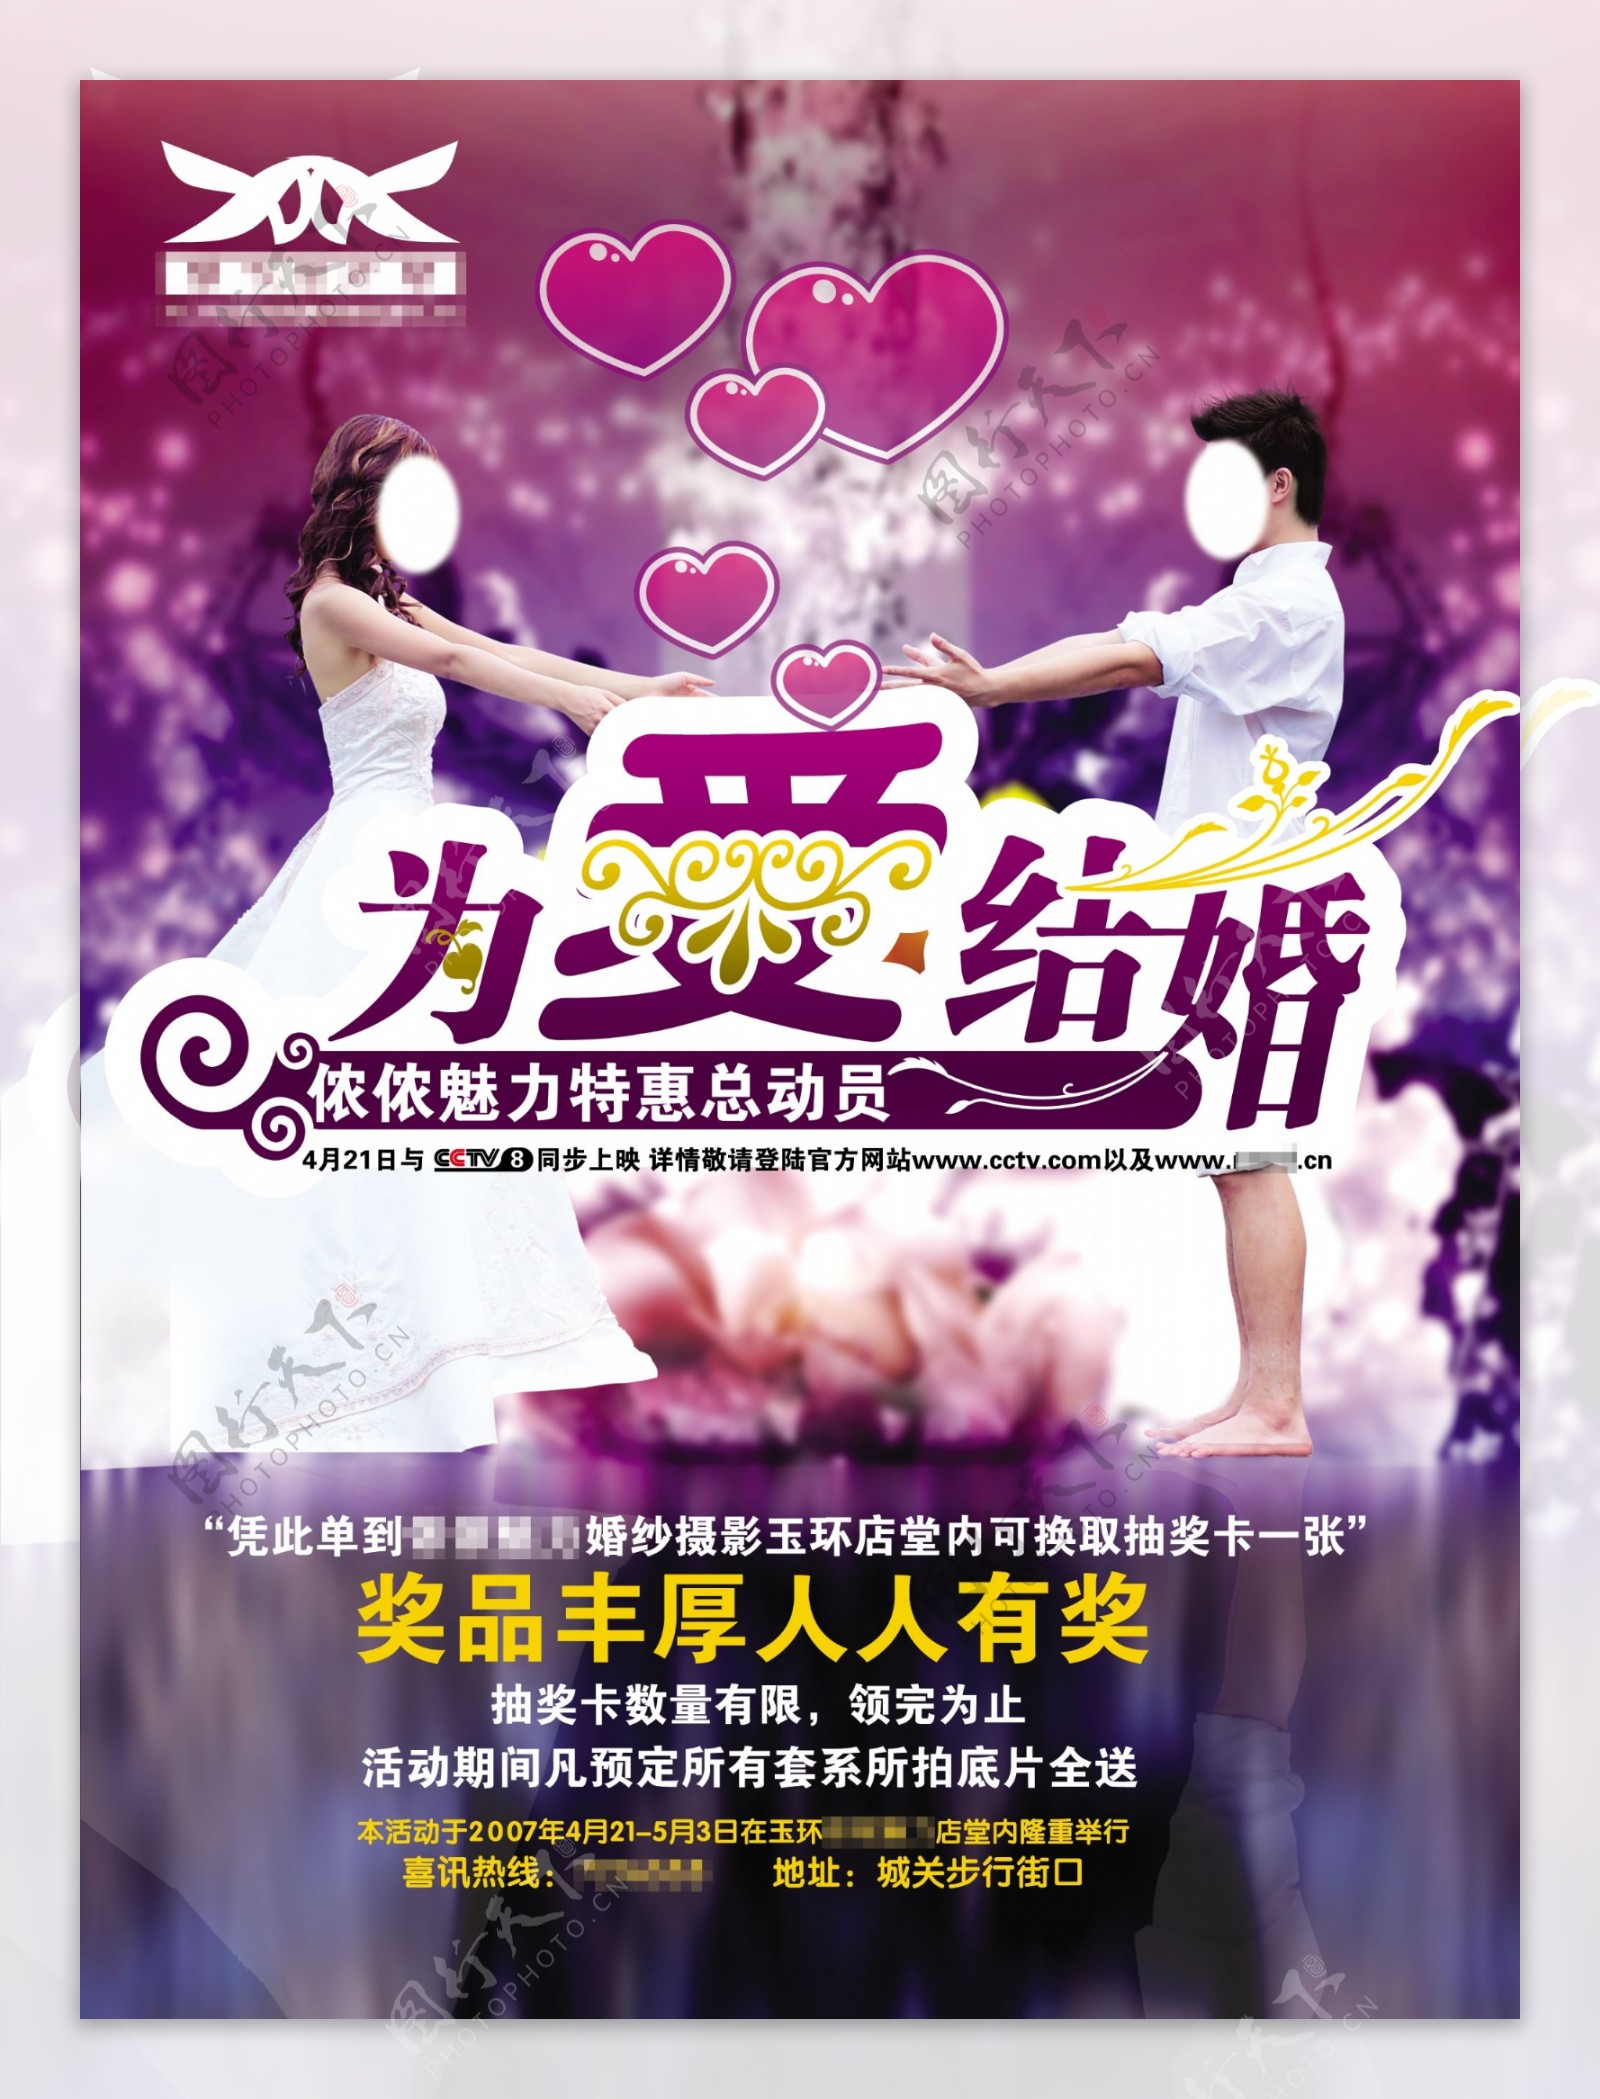 浪漫紫色婚庆宣传单图片